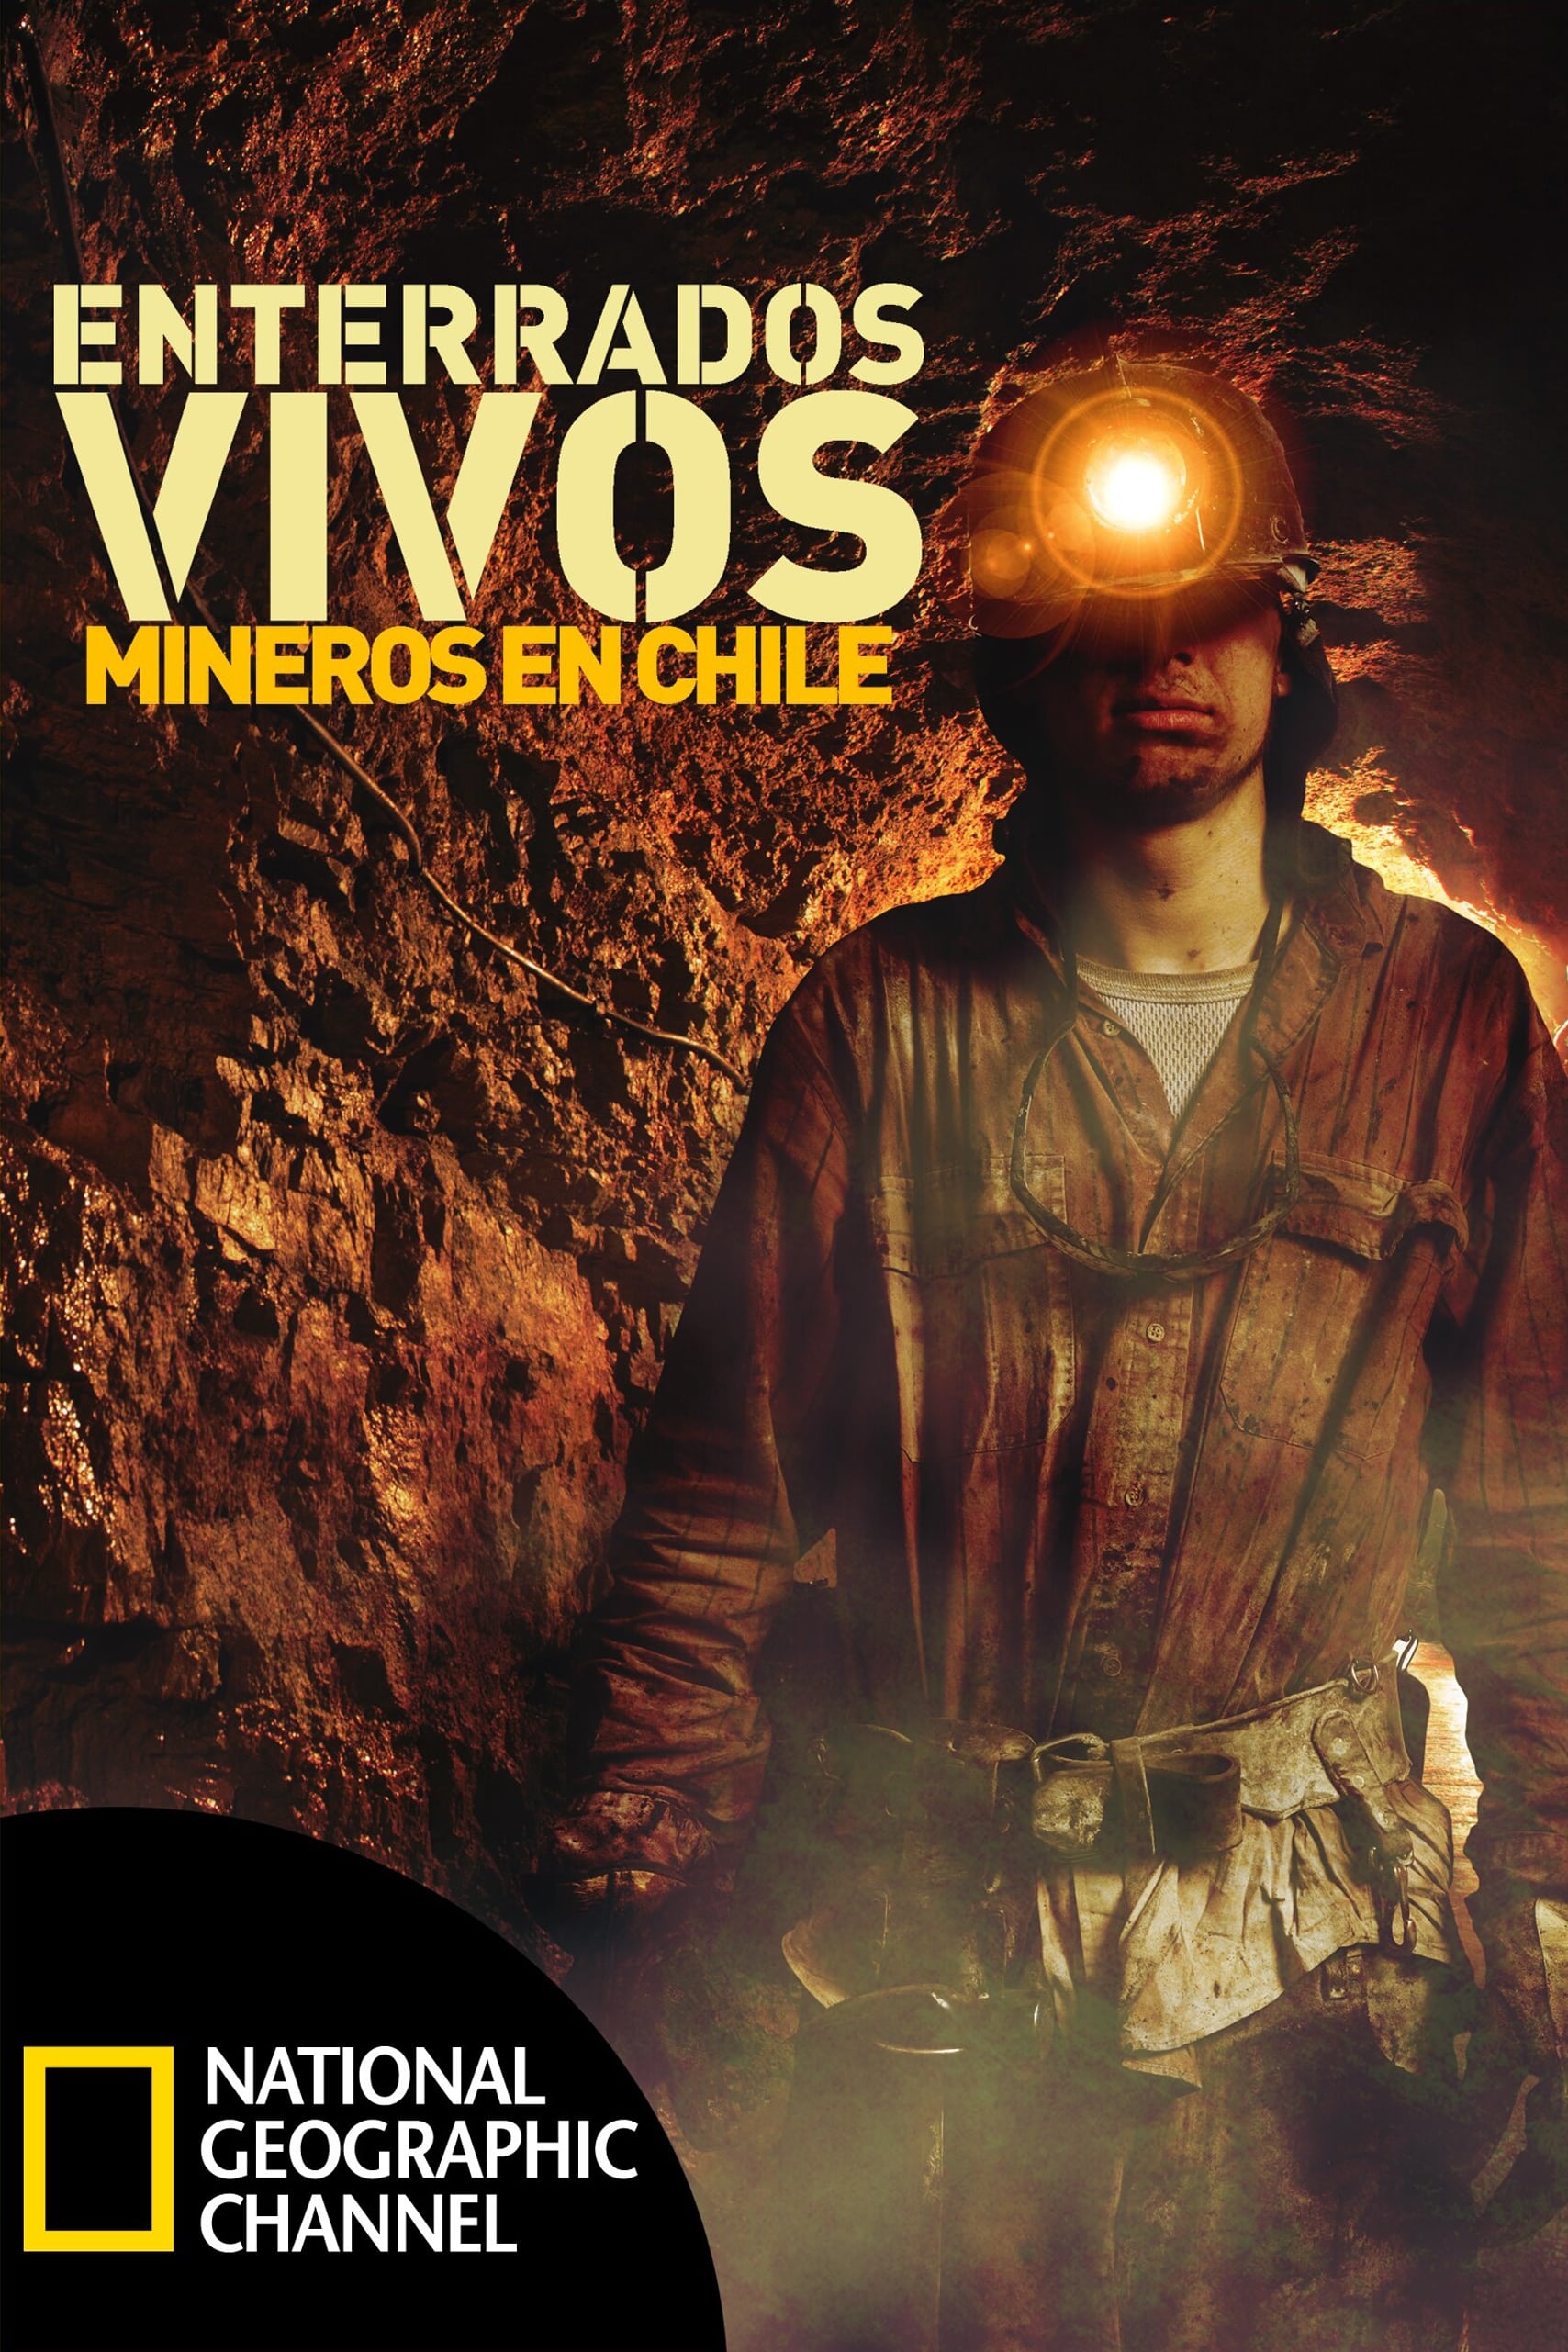 Buried Alive: Chile Mine Rescue